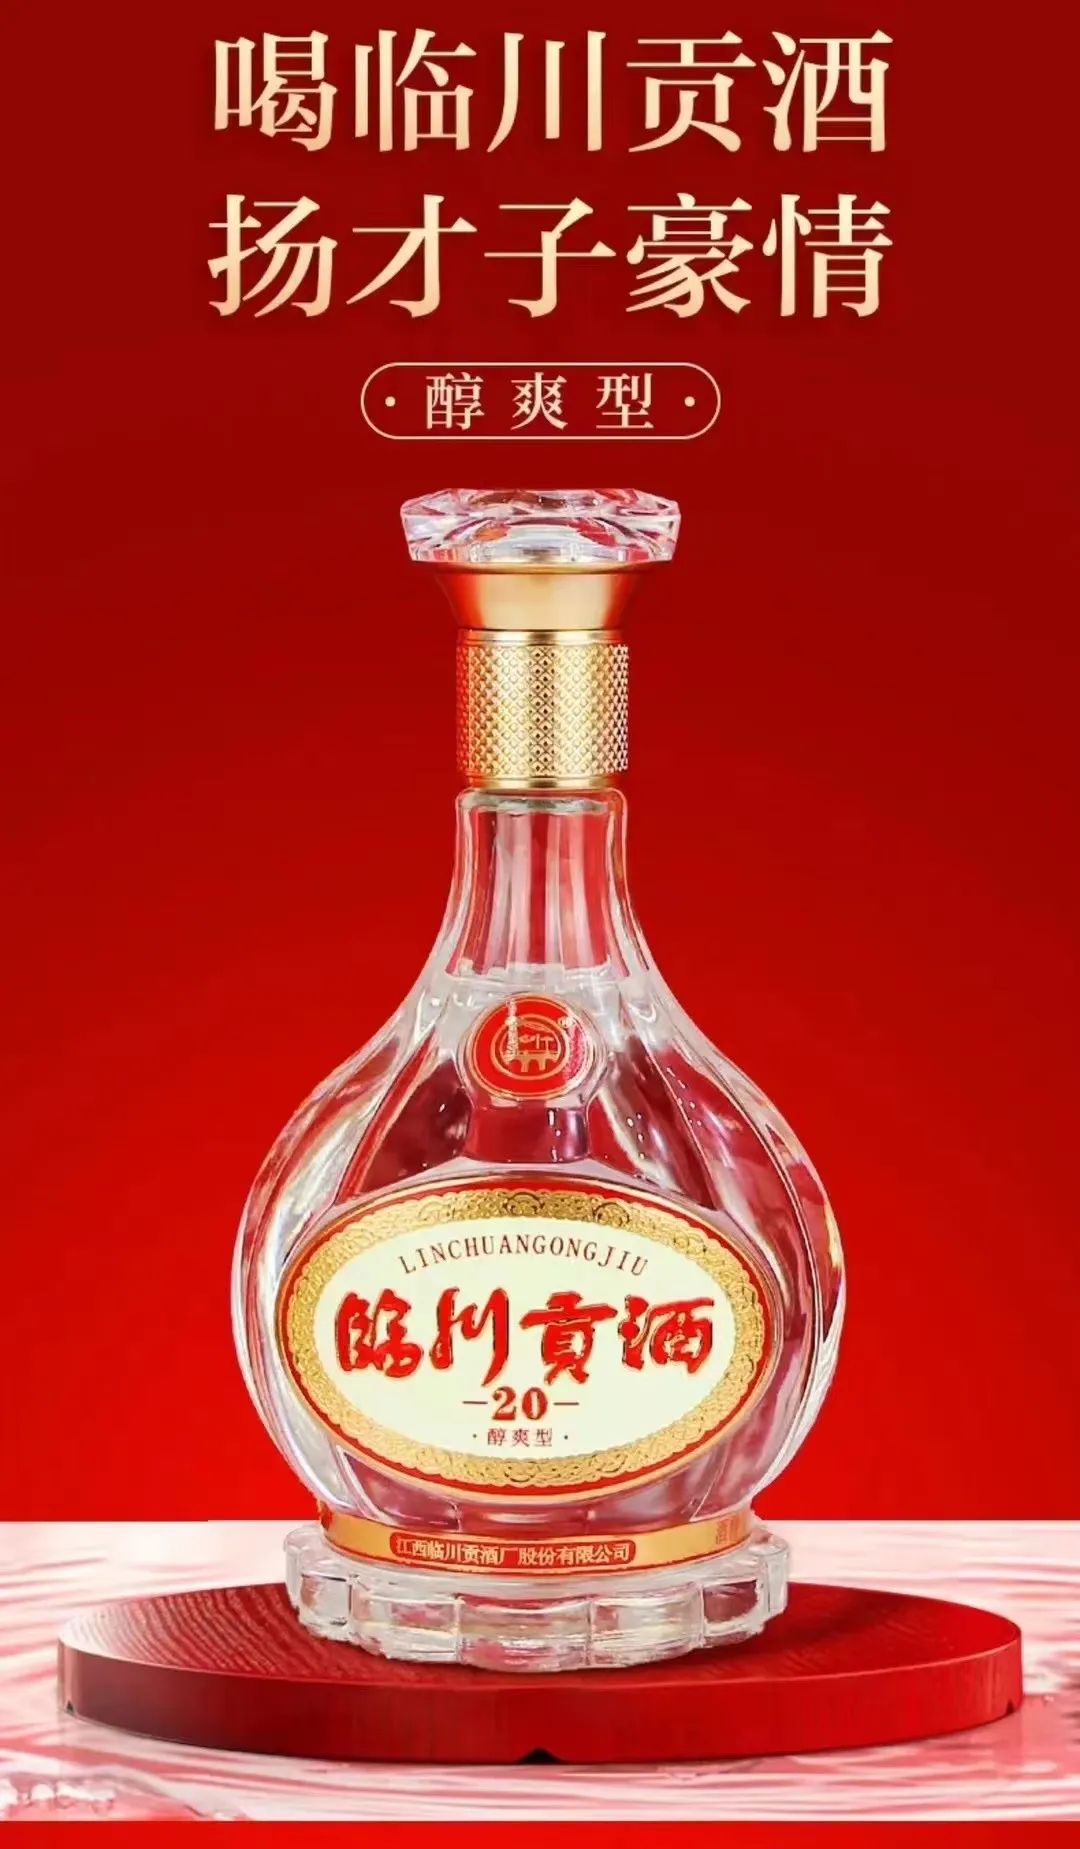 “临川贡酒天津市总经销”正式签约揭牌